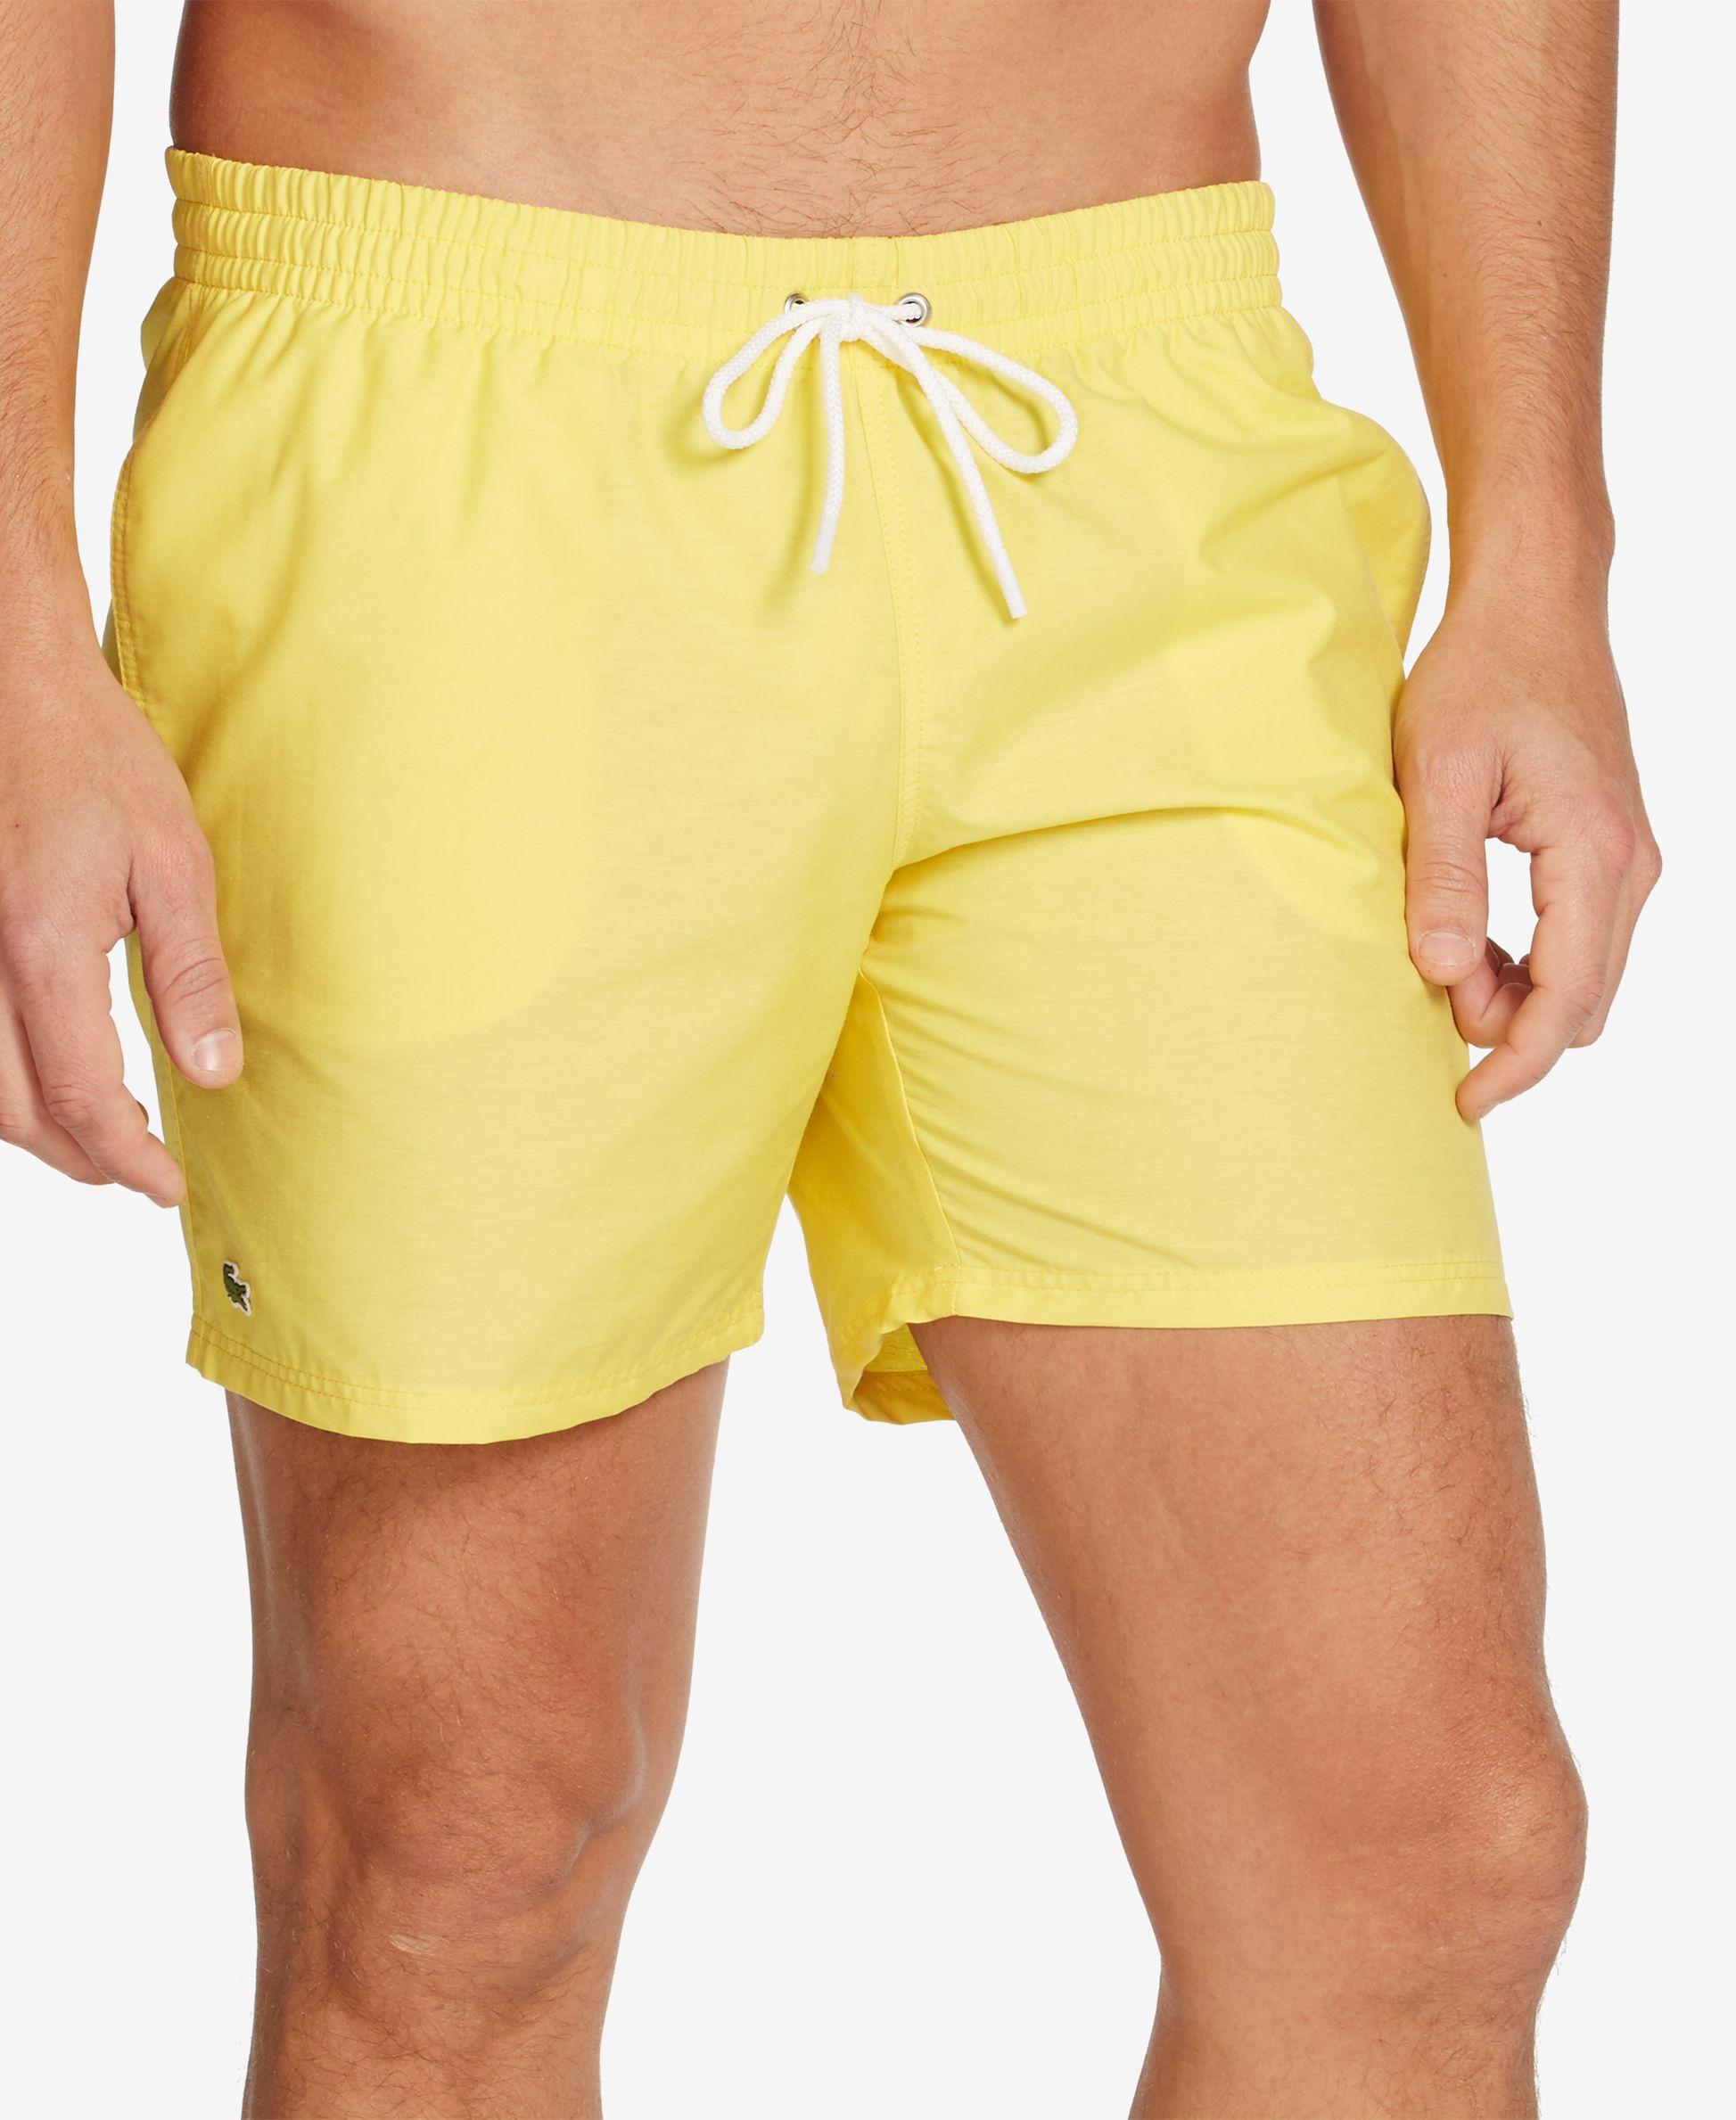 Lacoste Men's Basic Swim Trunks in Yellow for Men - Lyst